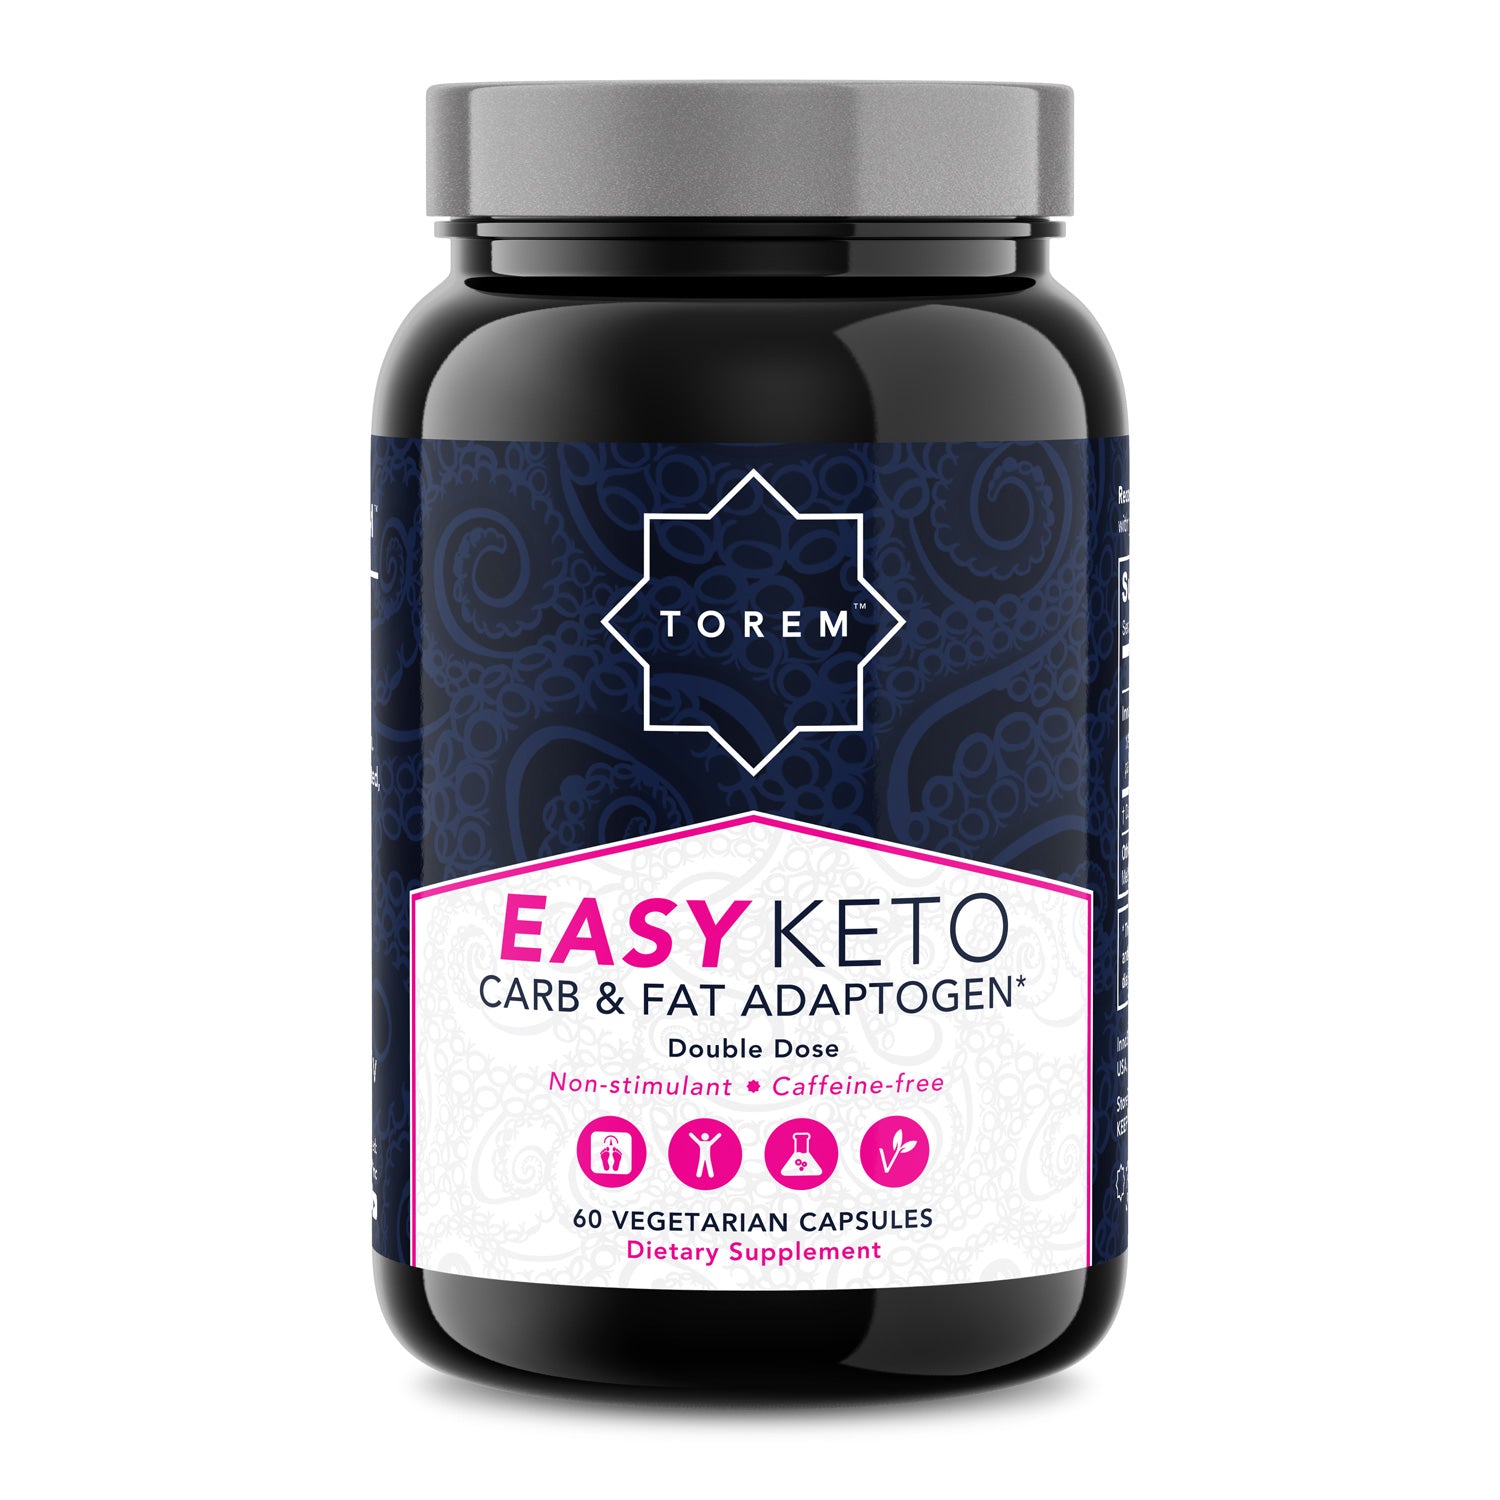 Easy KETO: Carb & Fat Adaptogen